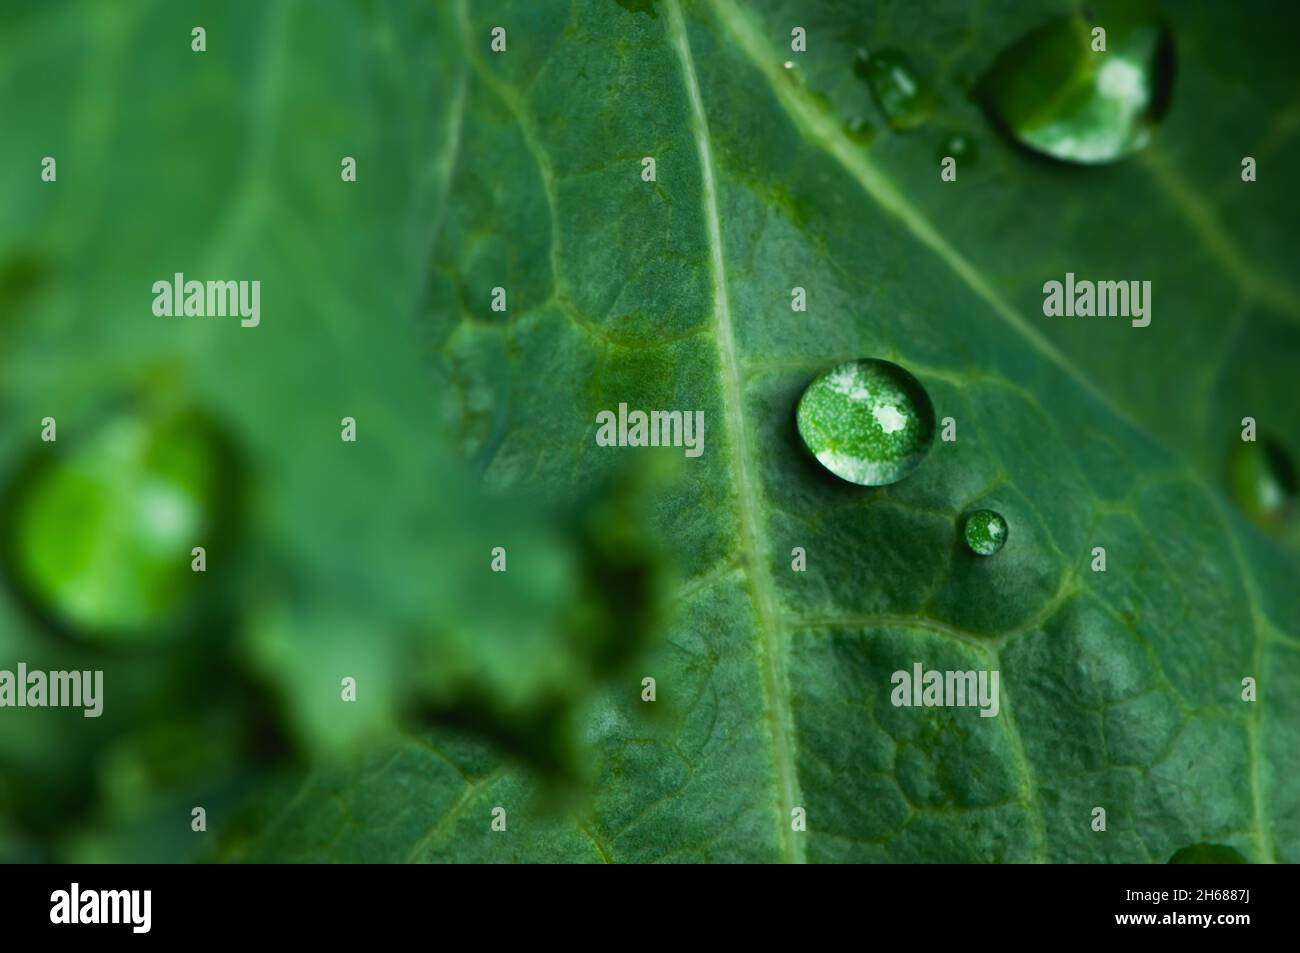 Gros plan sur des gouttes d'eau sur une feuille de kale verte. Banque D'Images